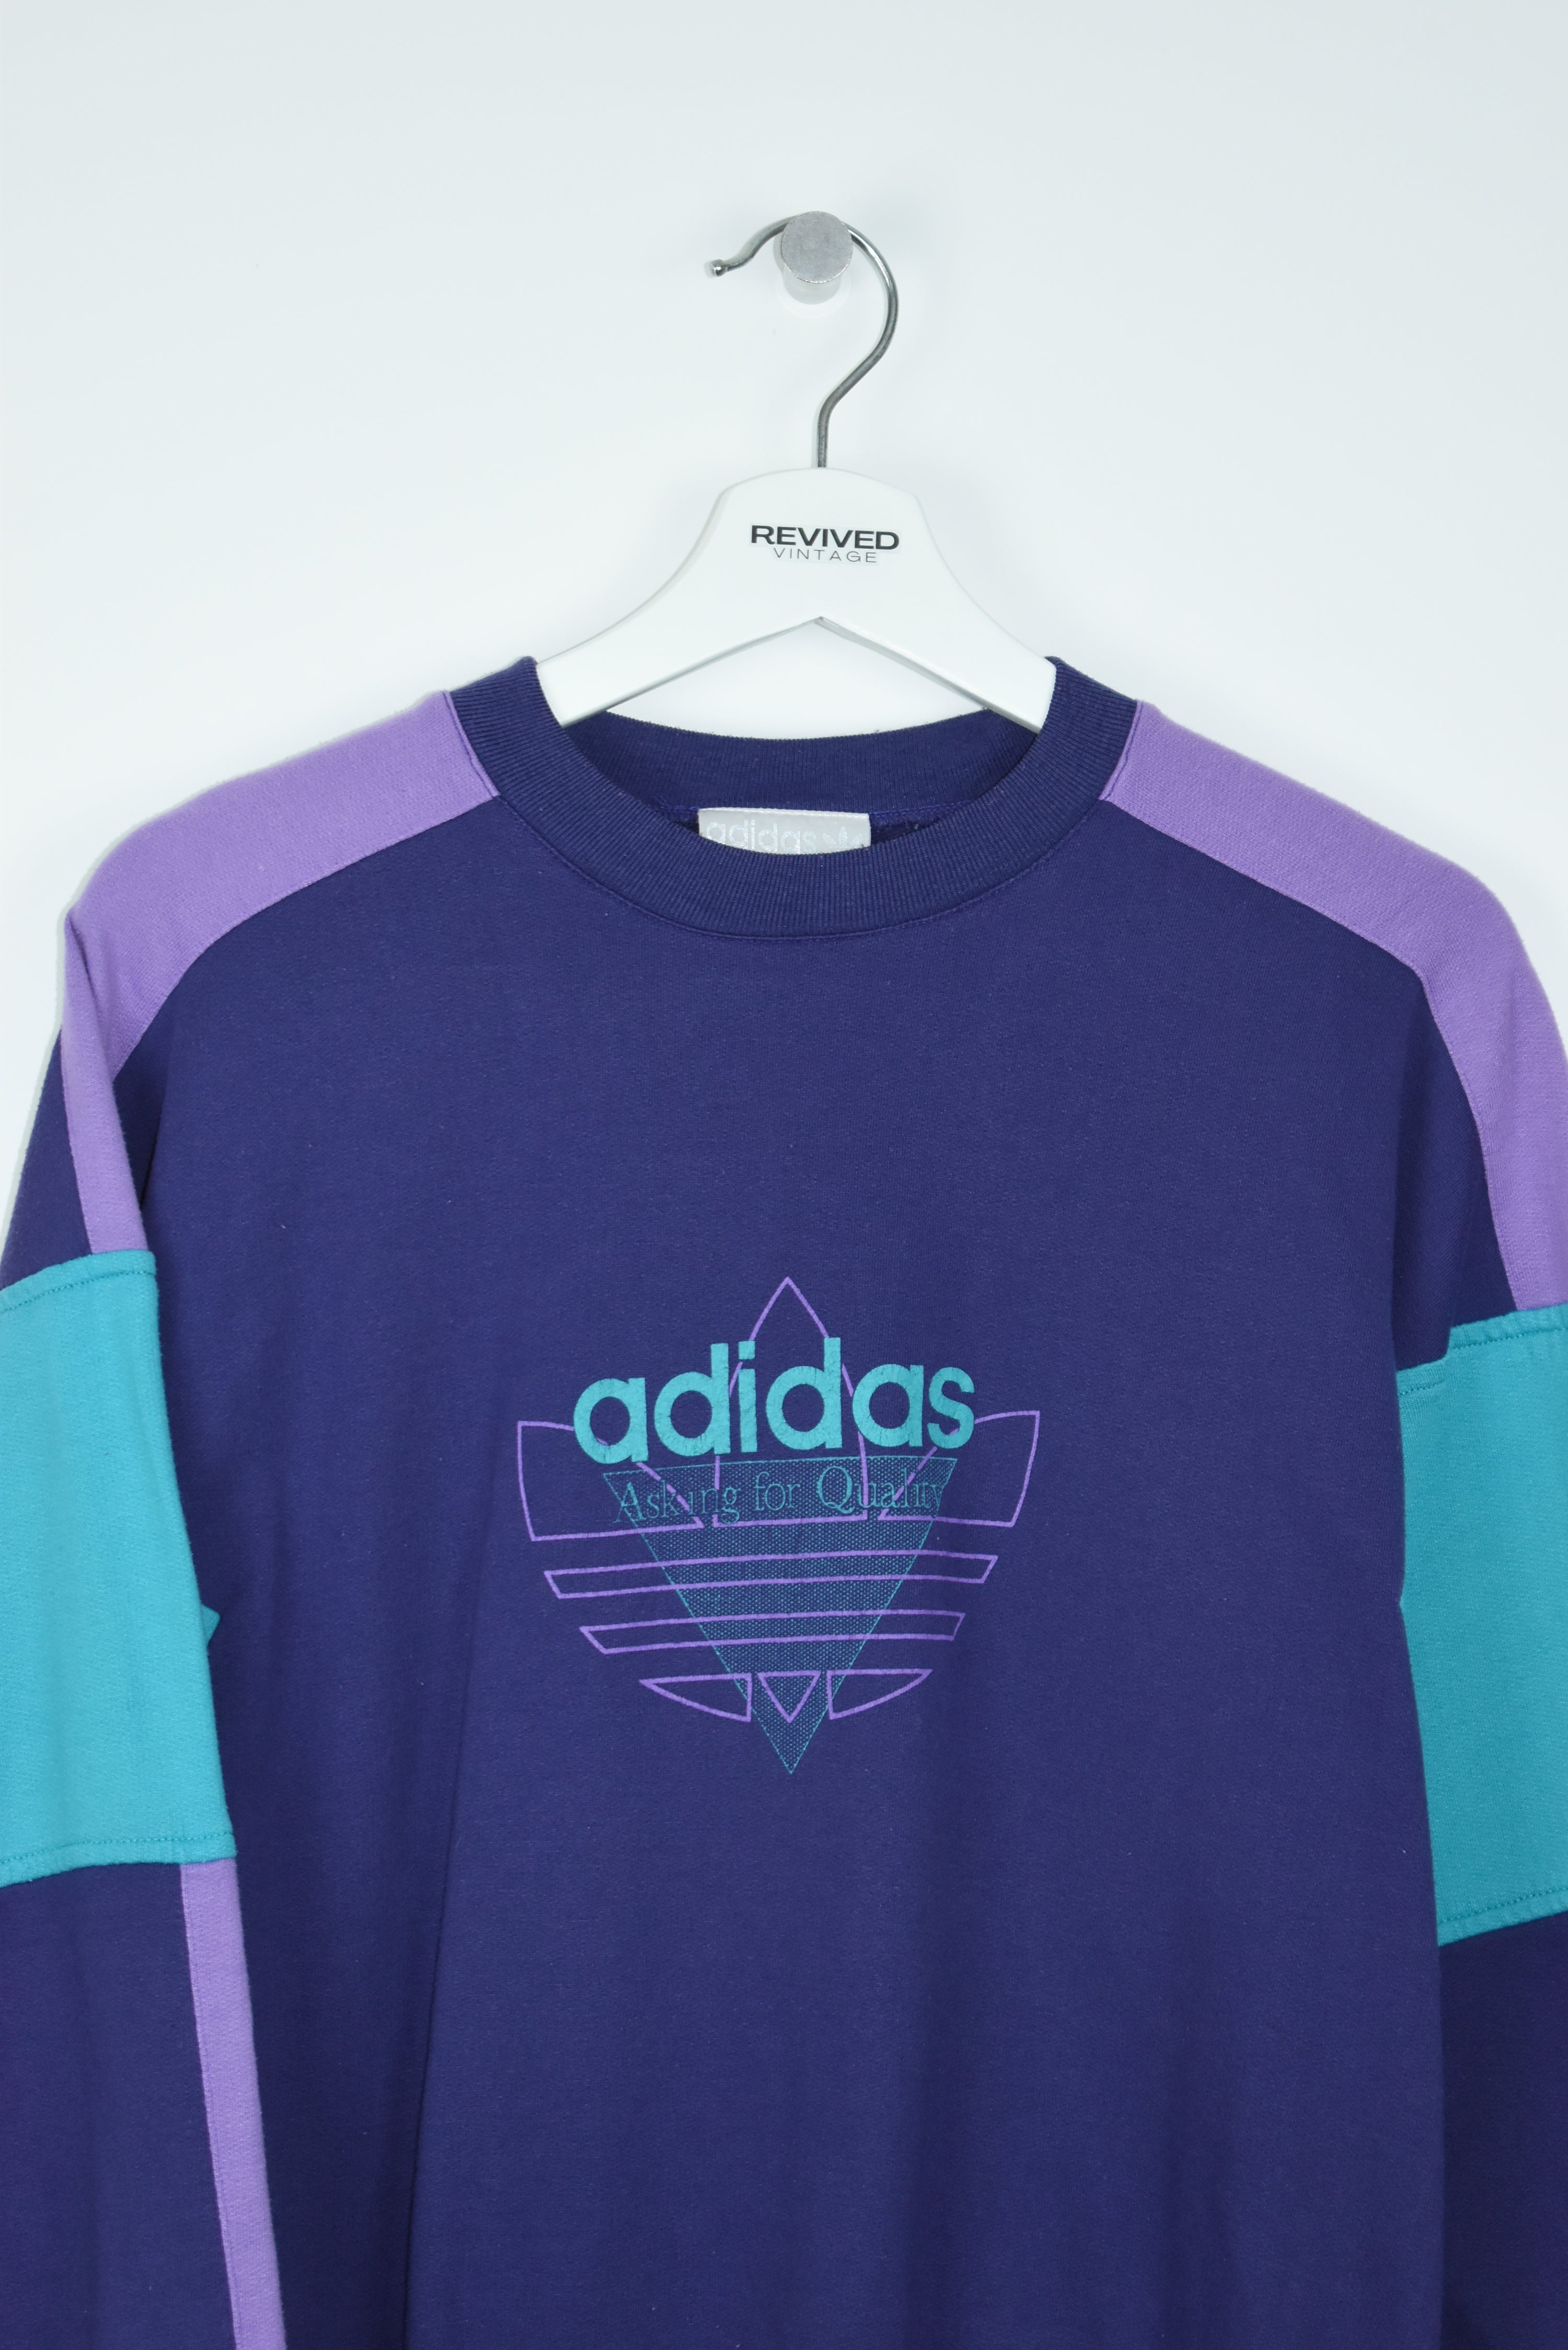 Vintage Adidas 80S Print Sweatshirt Medium